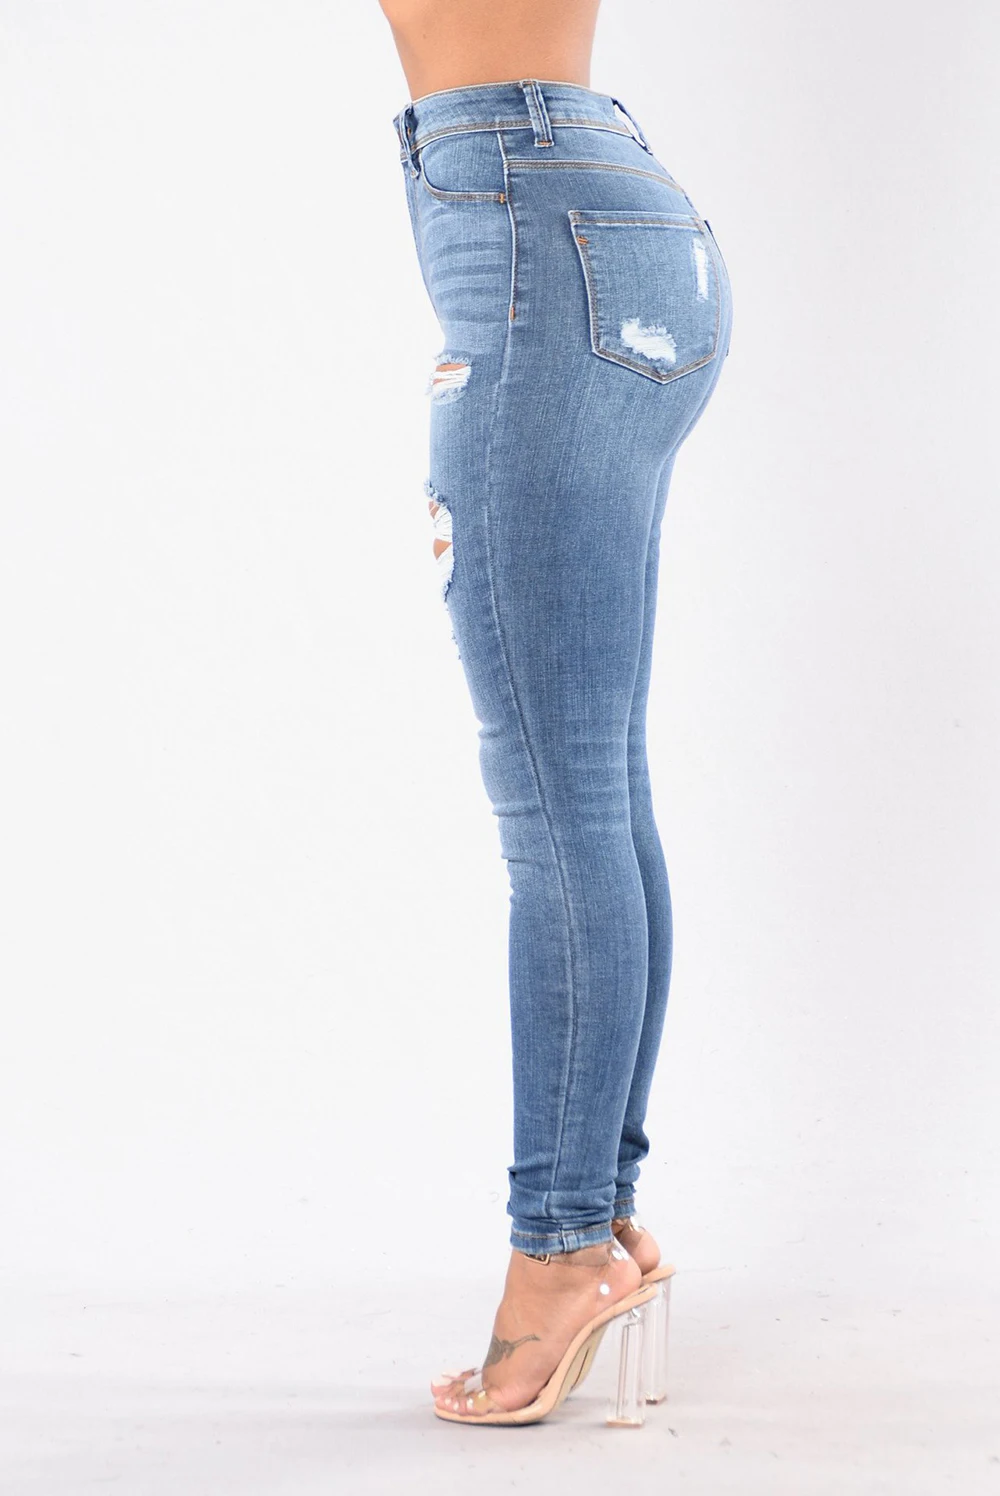 Выбеленные потертые рваные джинсы-карандаш, женские синие узкие длинные штаны со средней талией, эластичные джинсы